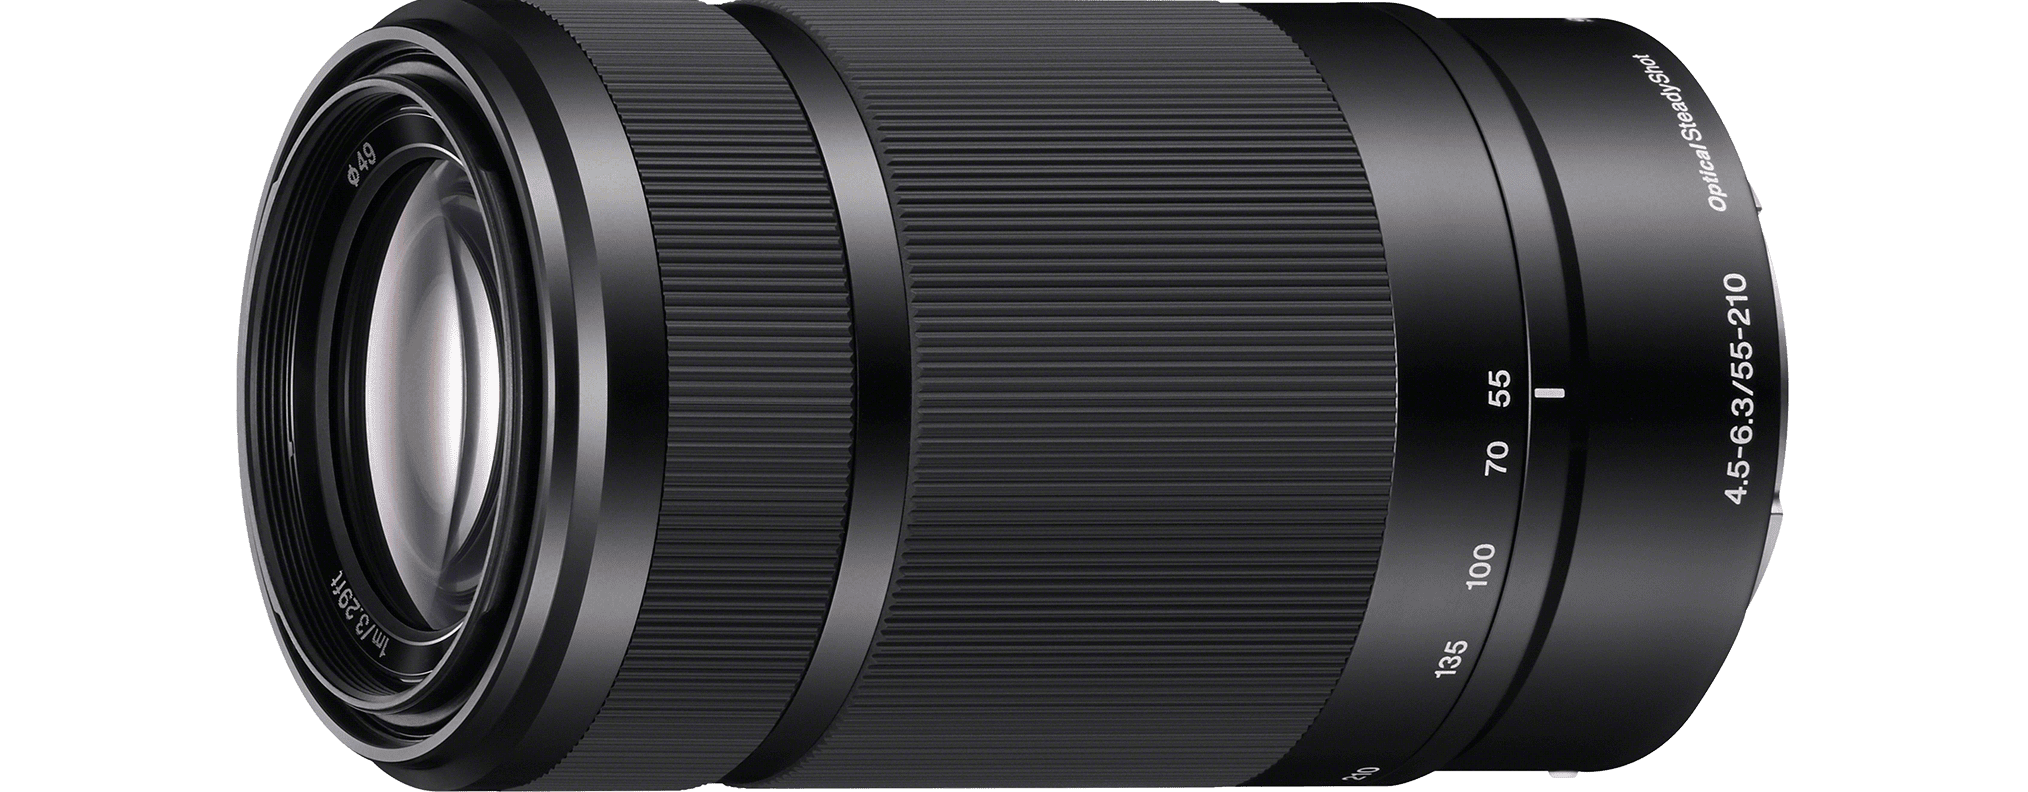 Sony SEL55210/B E 55-210mm F4.5-6.3 OSS E-mount Zoom Lens